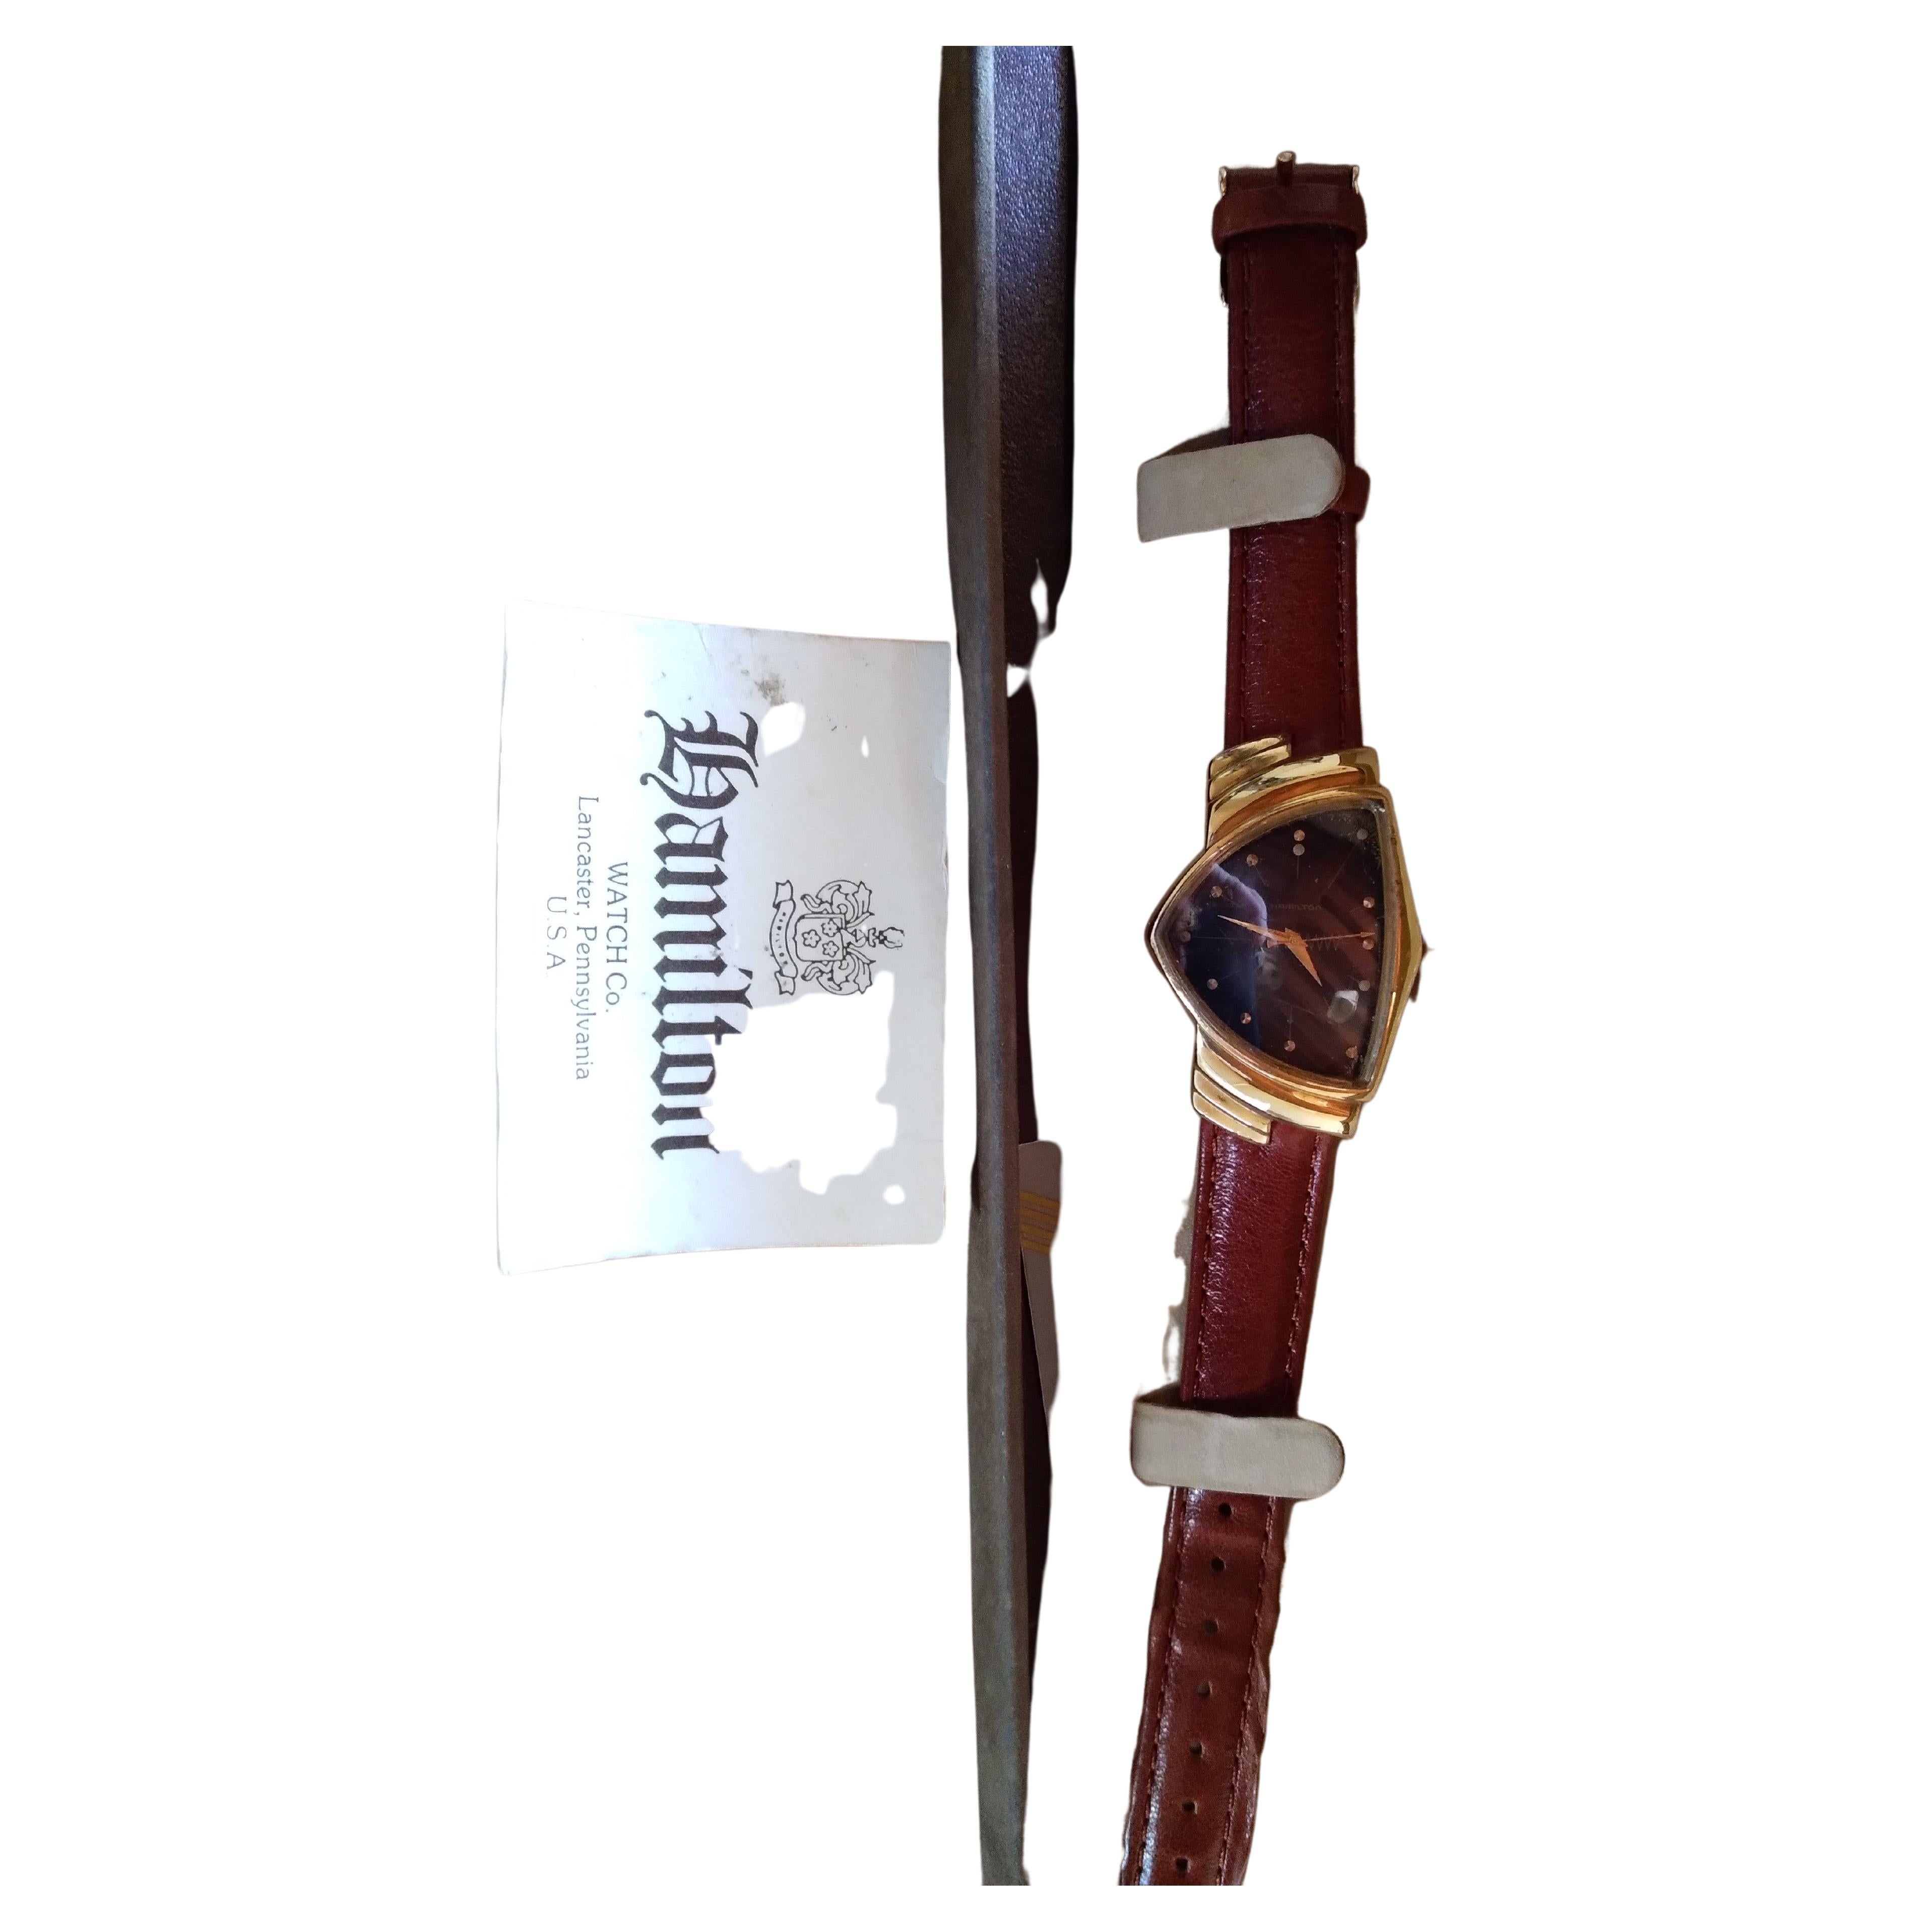 Ventura  Orologio Hamilton placcato in oro.  Ventura è stato il primo orologio prodotto dal 1956  al quarzo , rappresenta il modello piu moderno per il suo tempo. Disegno iconico . Completo della scatola originale e di certificato di autenticità .